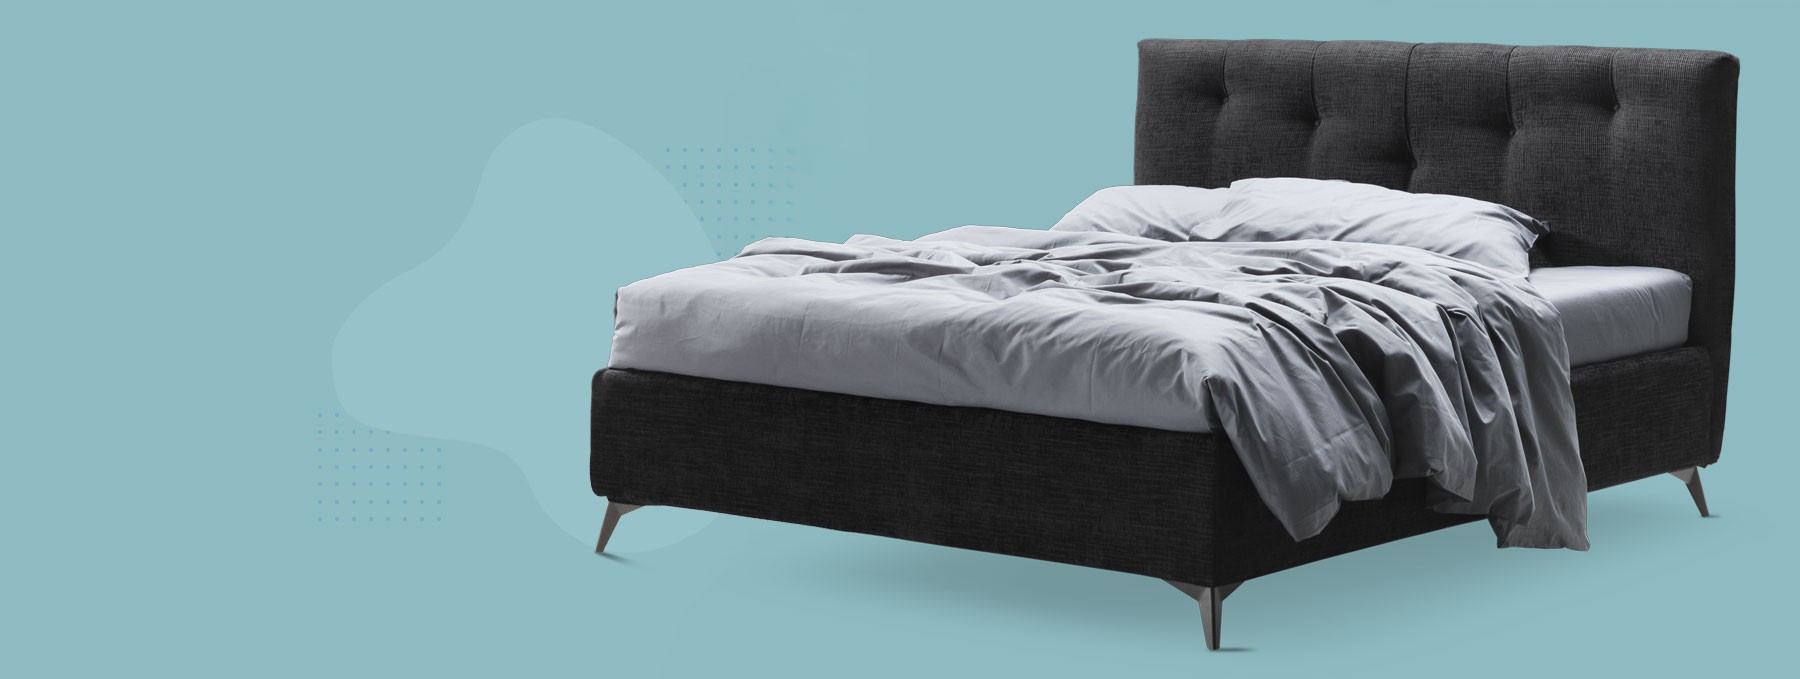 Personalizza il tuo letto con i nostri tessuti